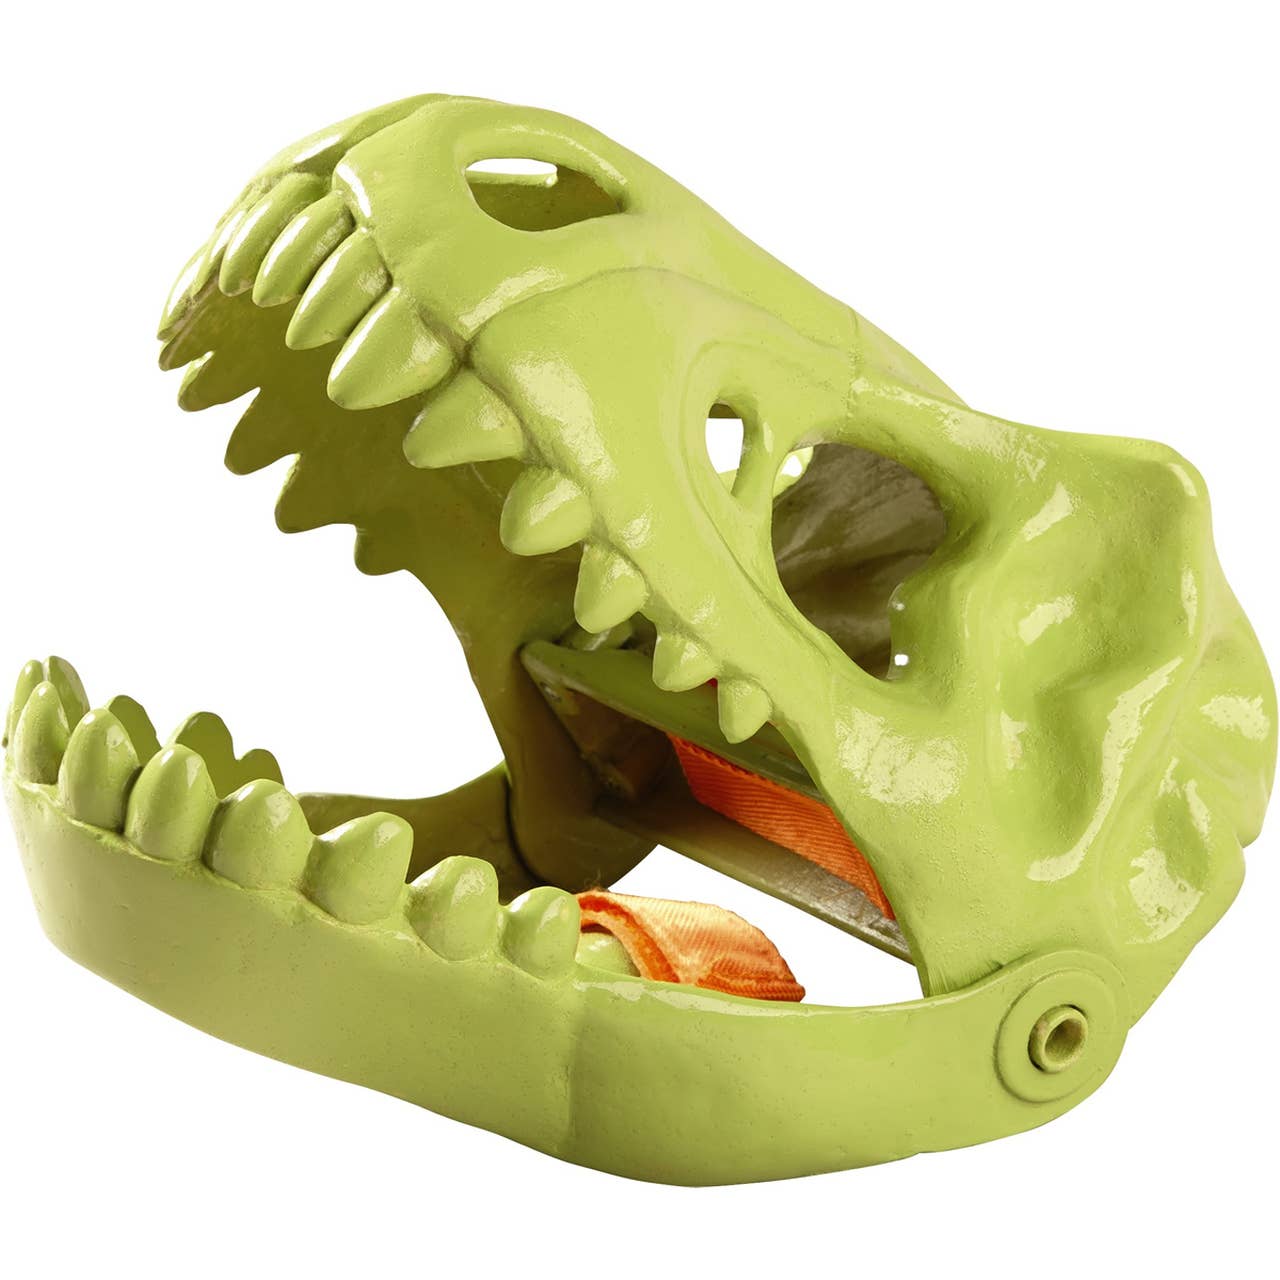 Sand Toy - Dinosaur Glove